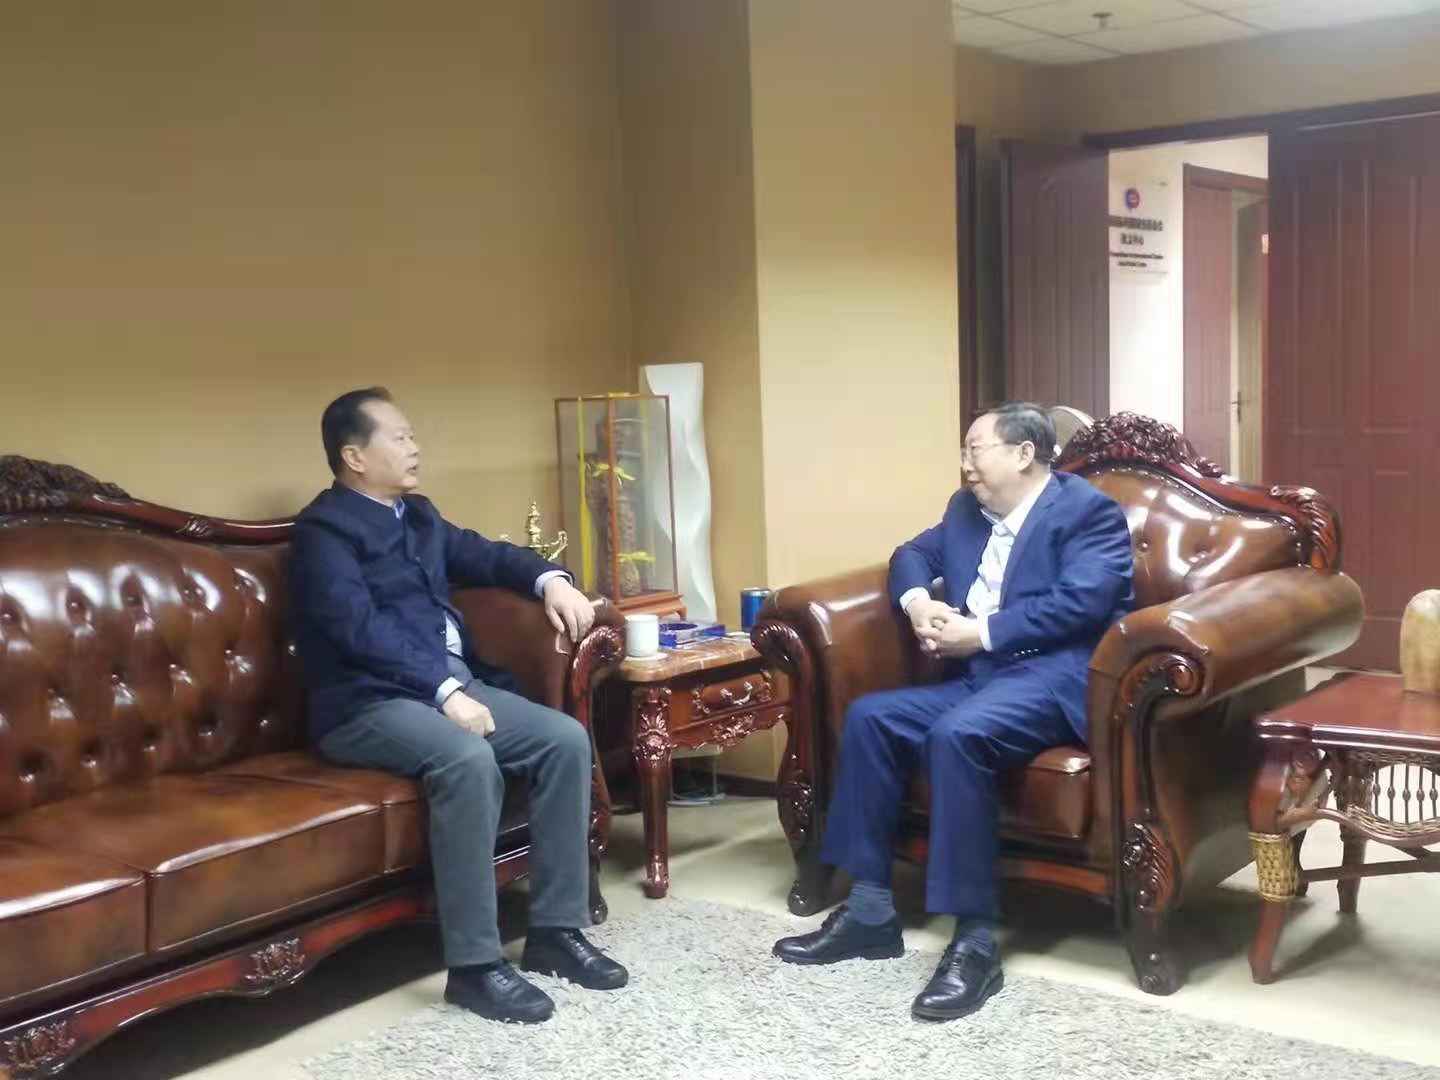 Mr.Xu met with Wang Jinzhen, former vice chairman of CCPIT